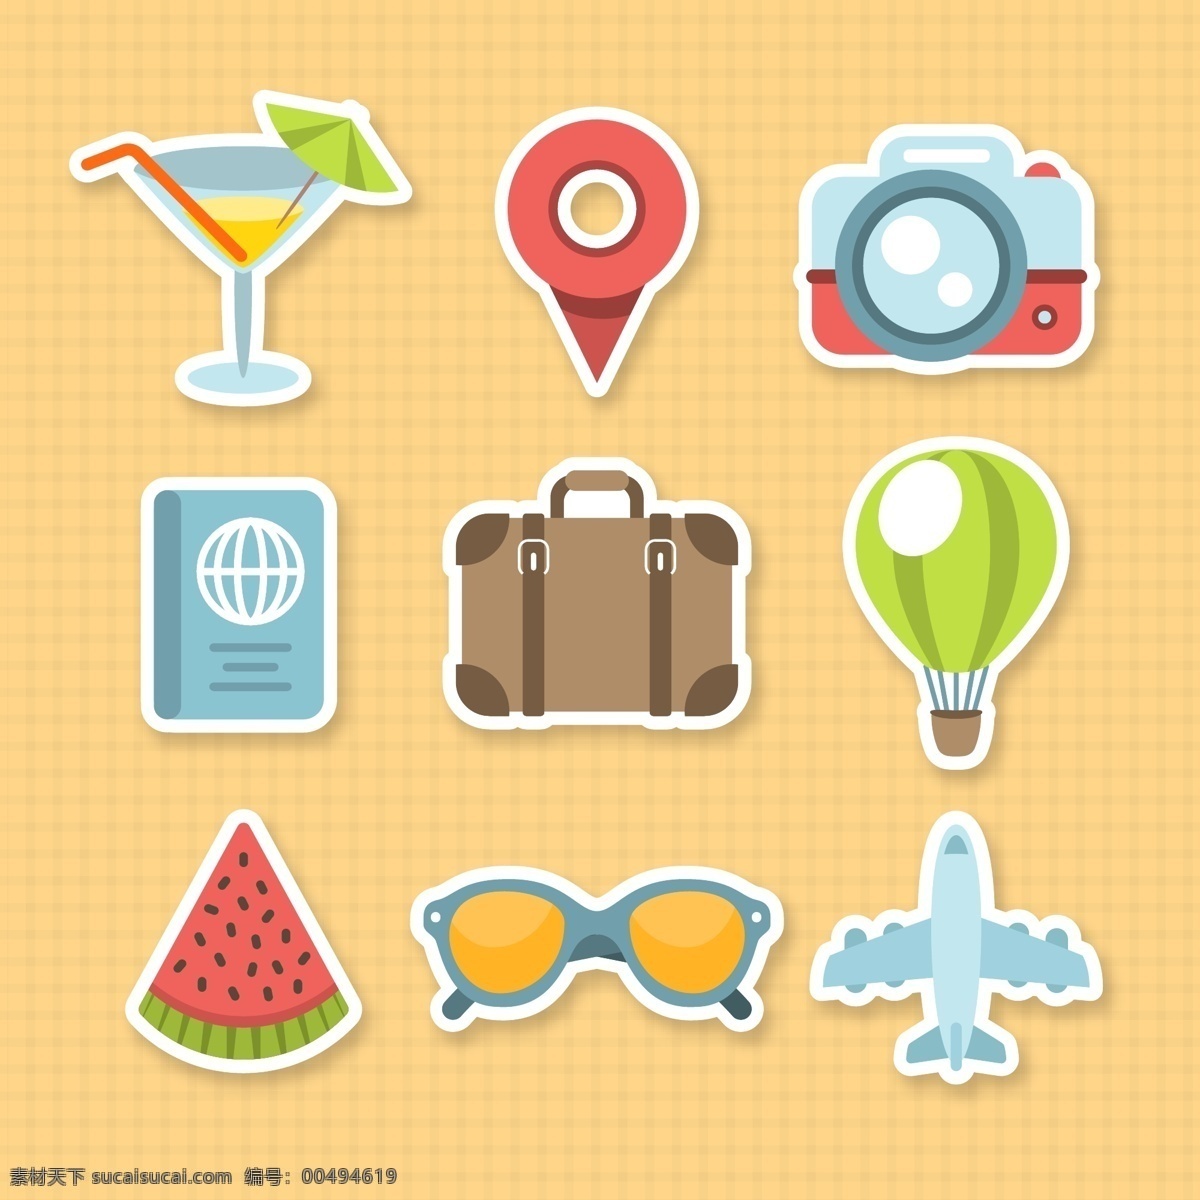 旅行元素图片 旅行元素 旅游元素 度假元素 度假图案 旅游图标 夏日图标 卡通元素 插图 手绘 插画 ai矢量 旅行箱 护照 icon